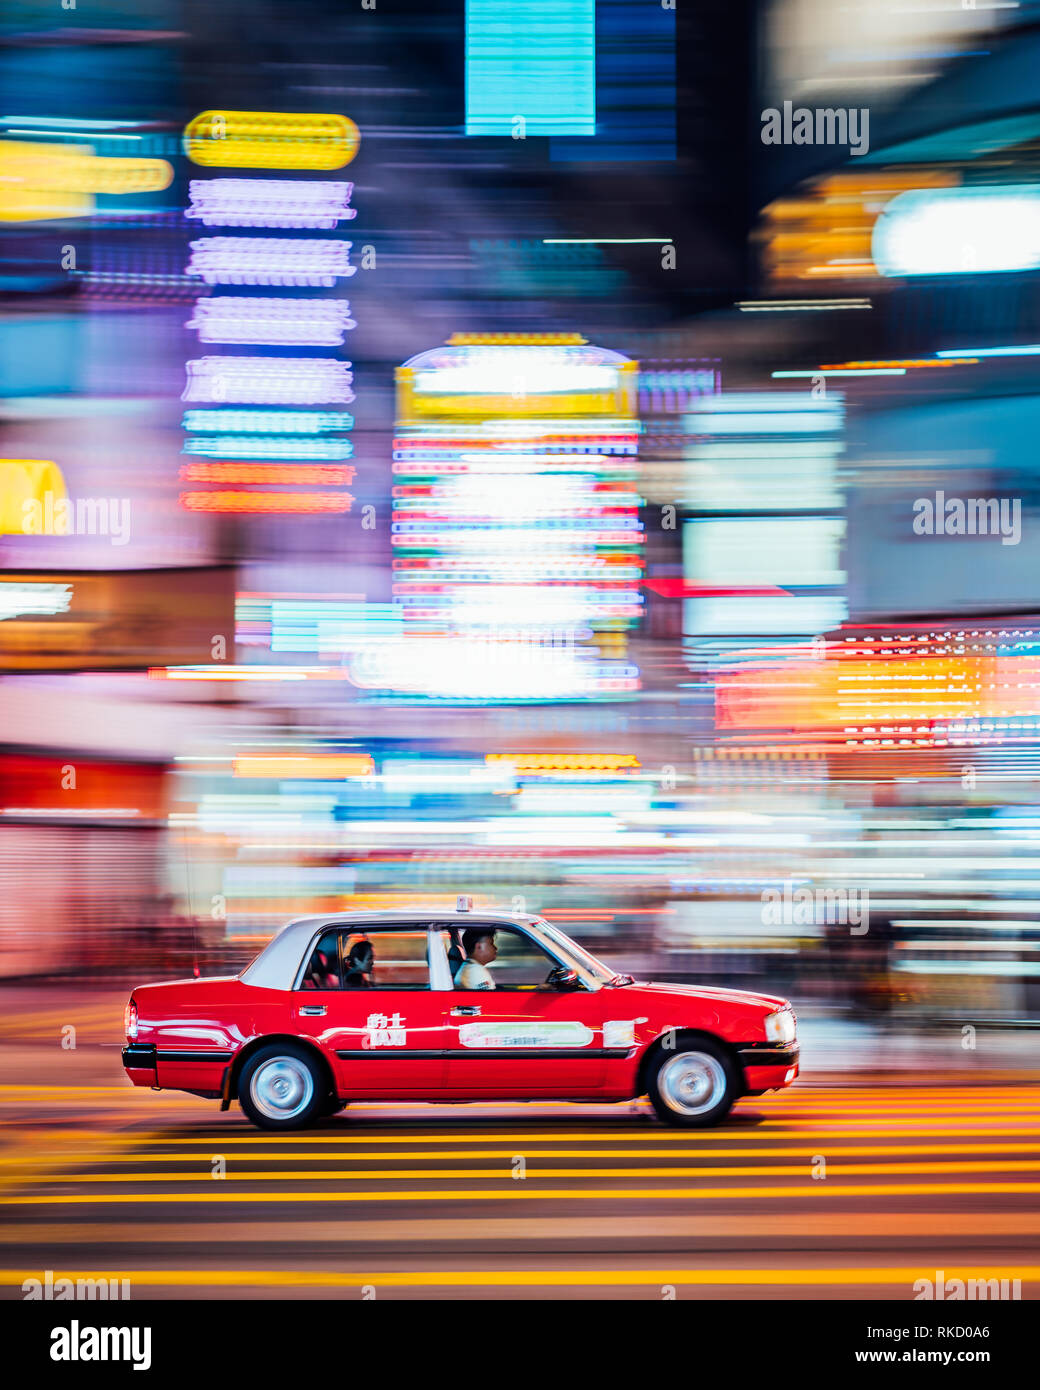 Luci al neon sono vibranti in tutta Hong Kong, un taxi rosso velocità attraverso un incrocio a Kowloon, Hong Kong. I taxi sono un modo conveniente per i pendolari. Foto Stock